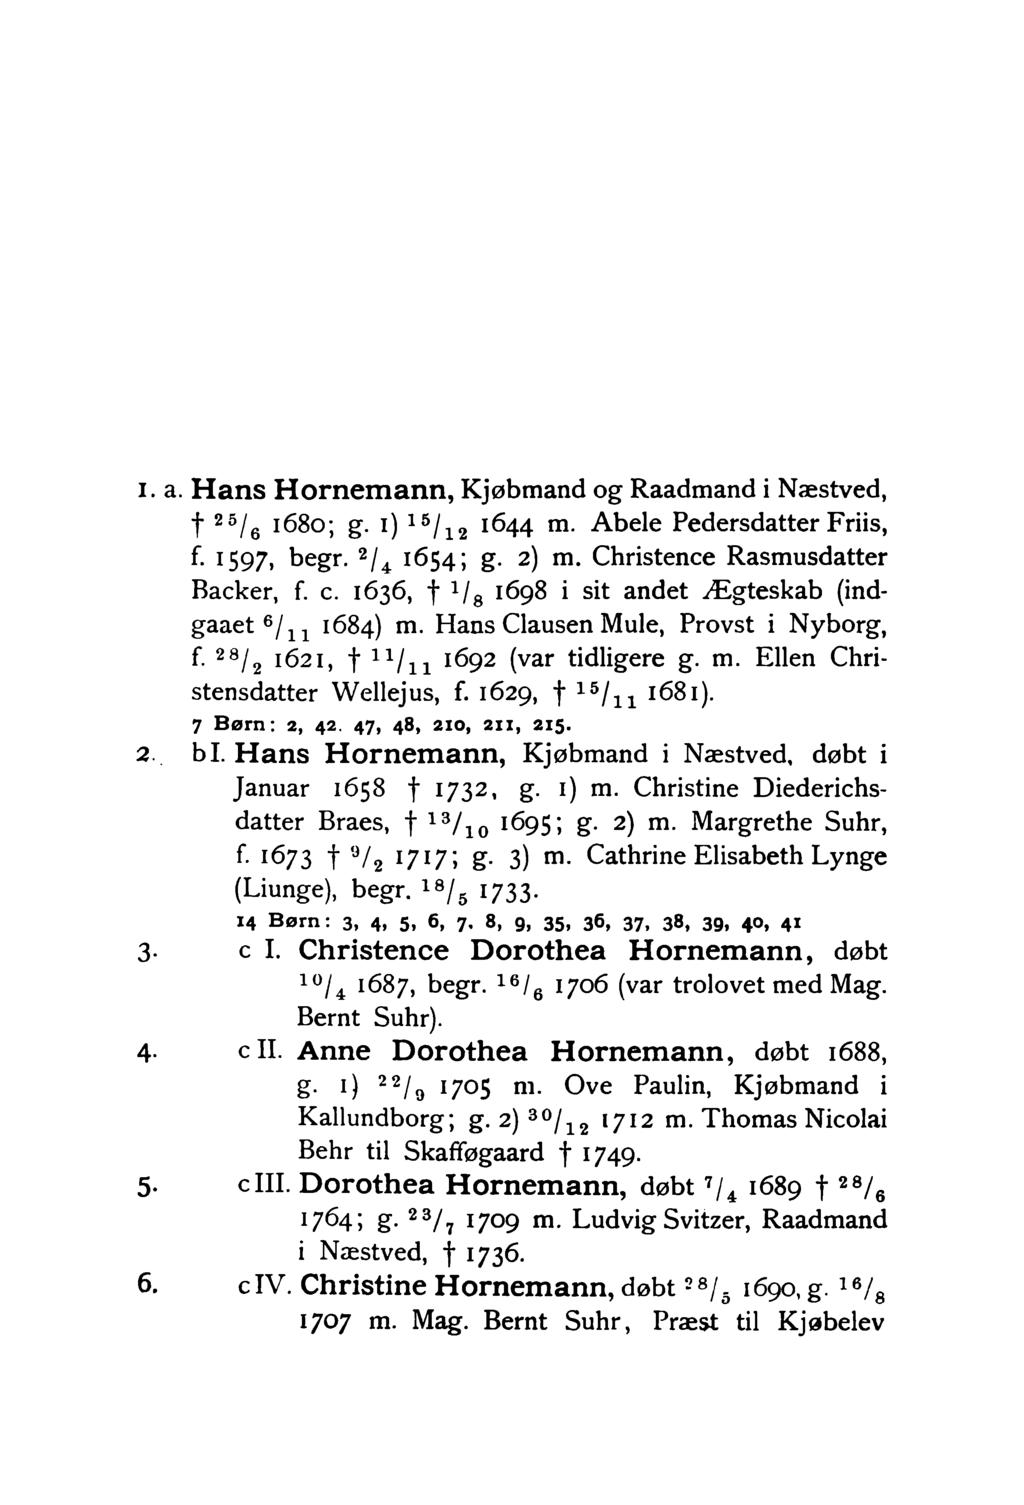 i. a. Hans Hornemann, Kjøbmand og Raadmand i Næstved, f 25/q 1680; g. i) 15/12 1644 m. Abele Pedersdatter Friis, f. 1597, begr. 2/4 1654; g. 2) m. Christence Rasmusdatter Backer, f. c.